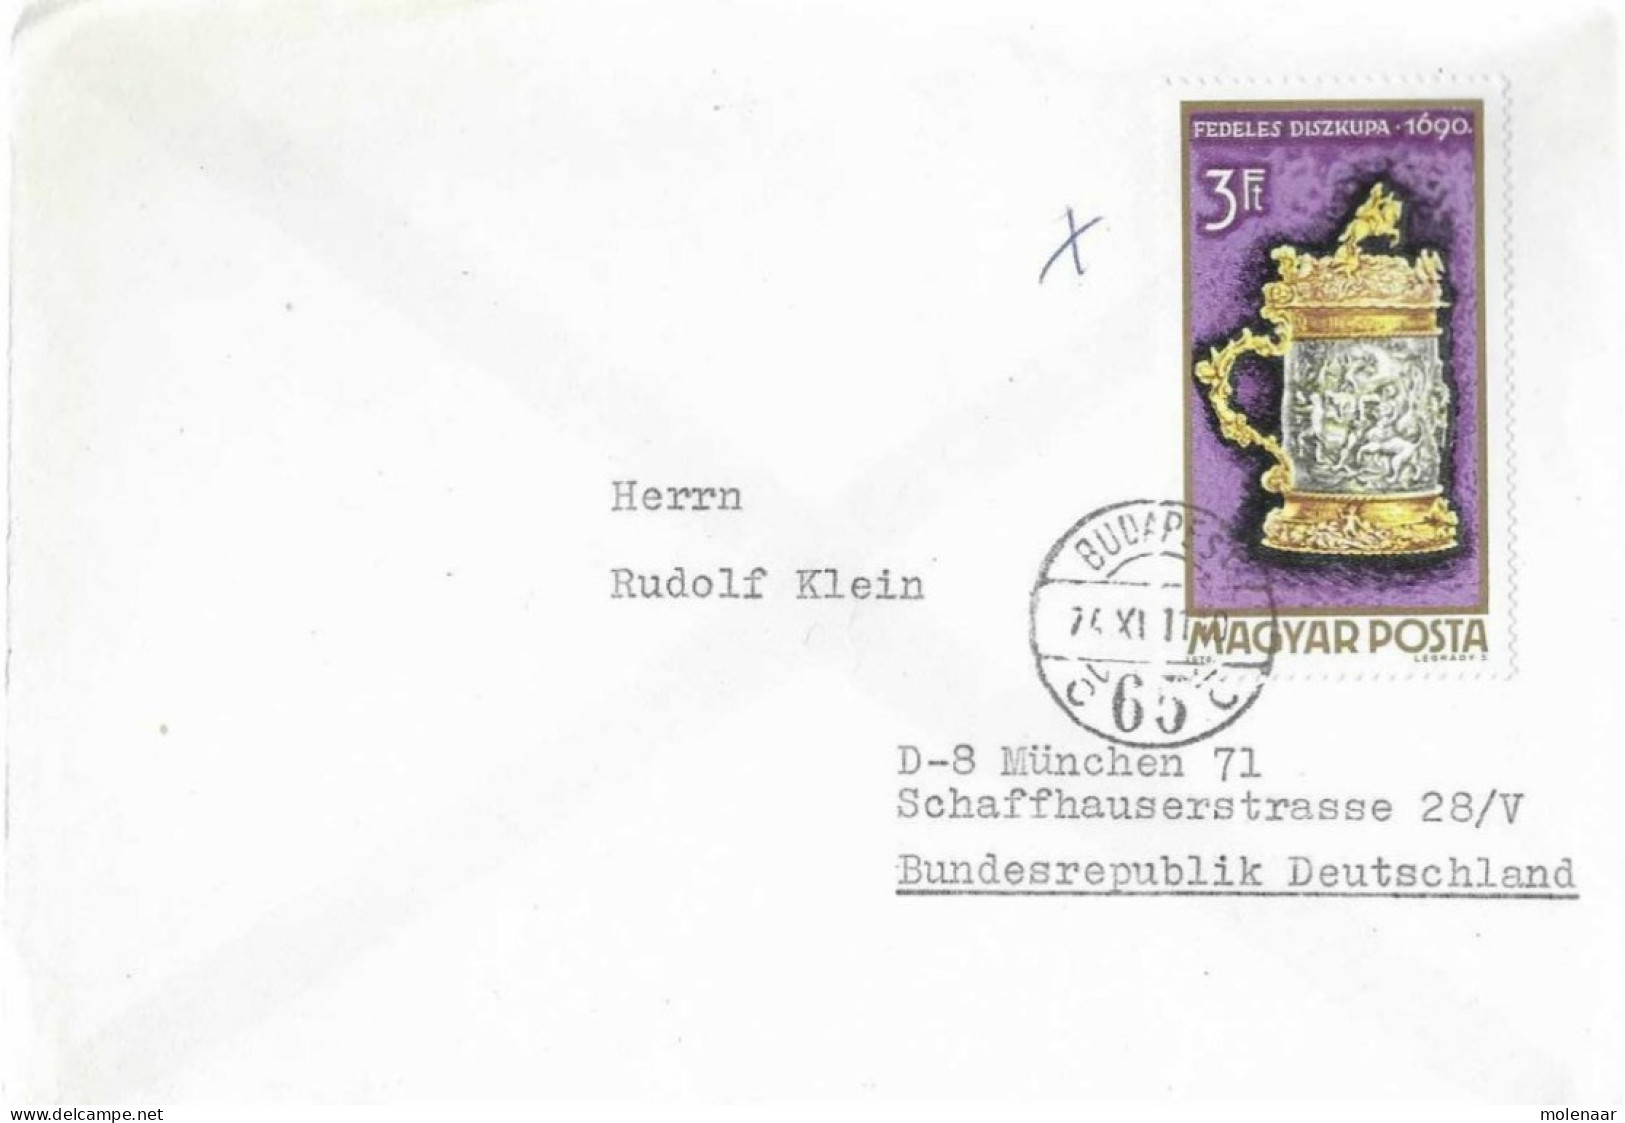 Postzegels > Europa > Hongarije > 1971-80 >brief Met 1 Postzegel (17062) - Covers & Documents